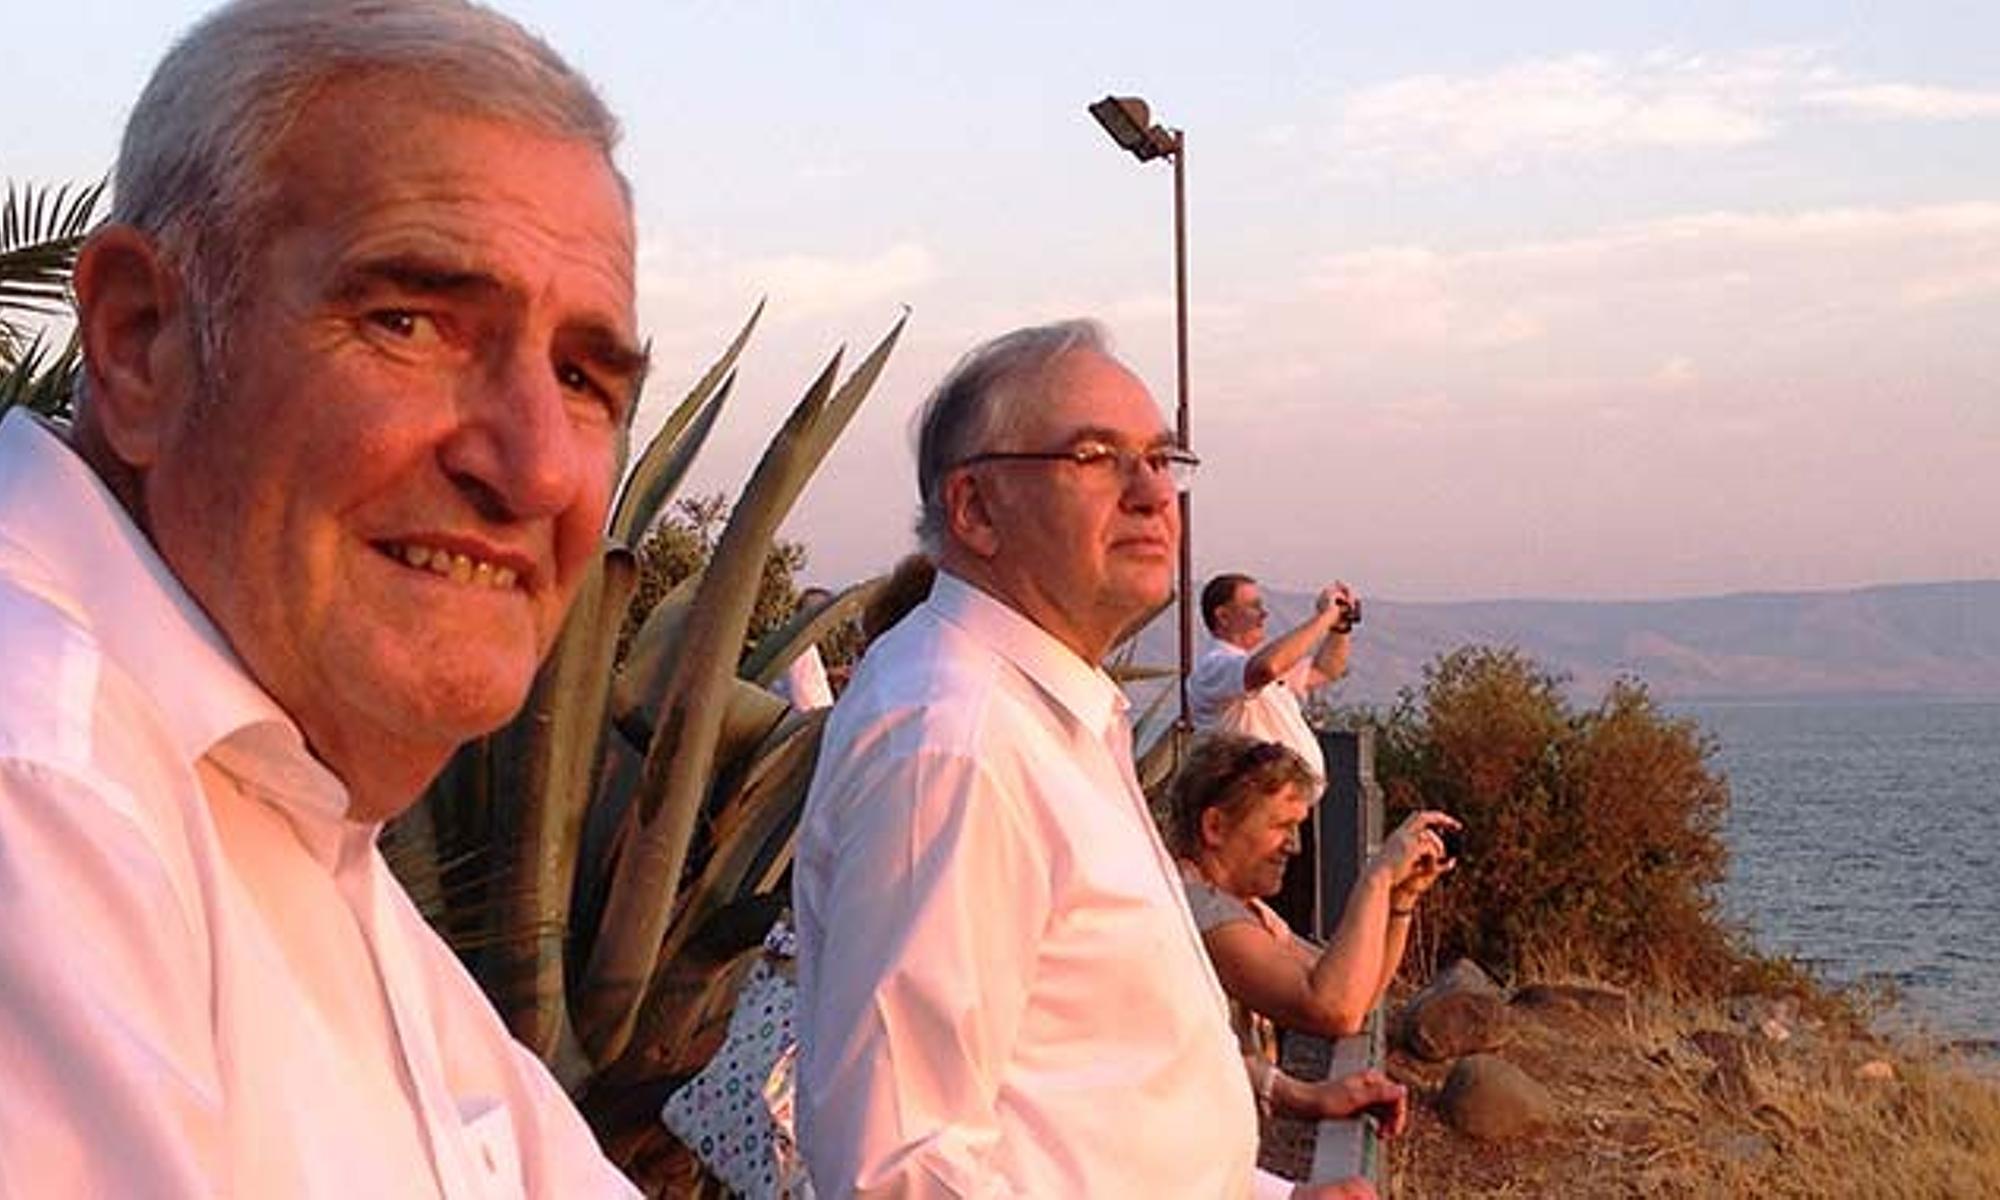 Bezirksapostel i.R. Klaus Saur (links) und Stammapostel Wilhelm Leber 2012 in Israel